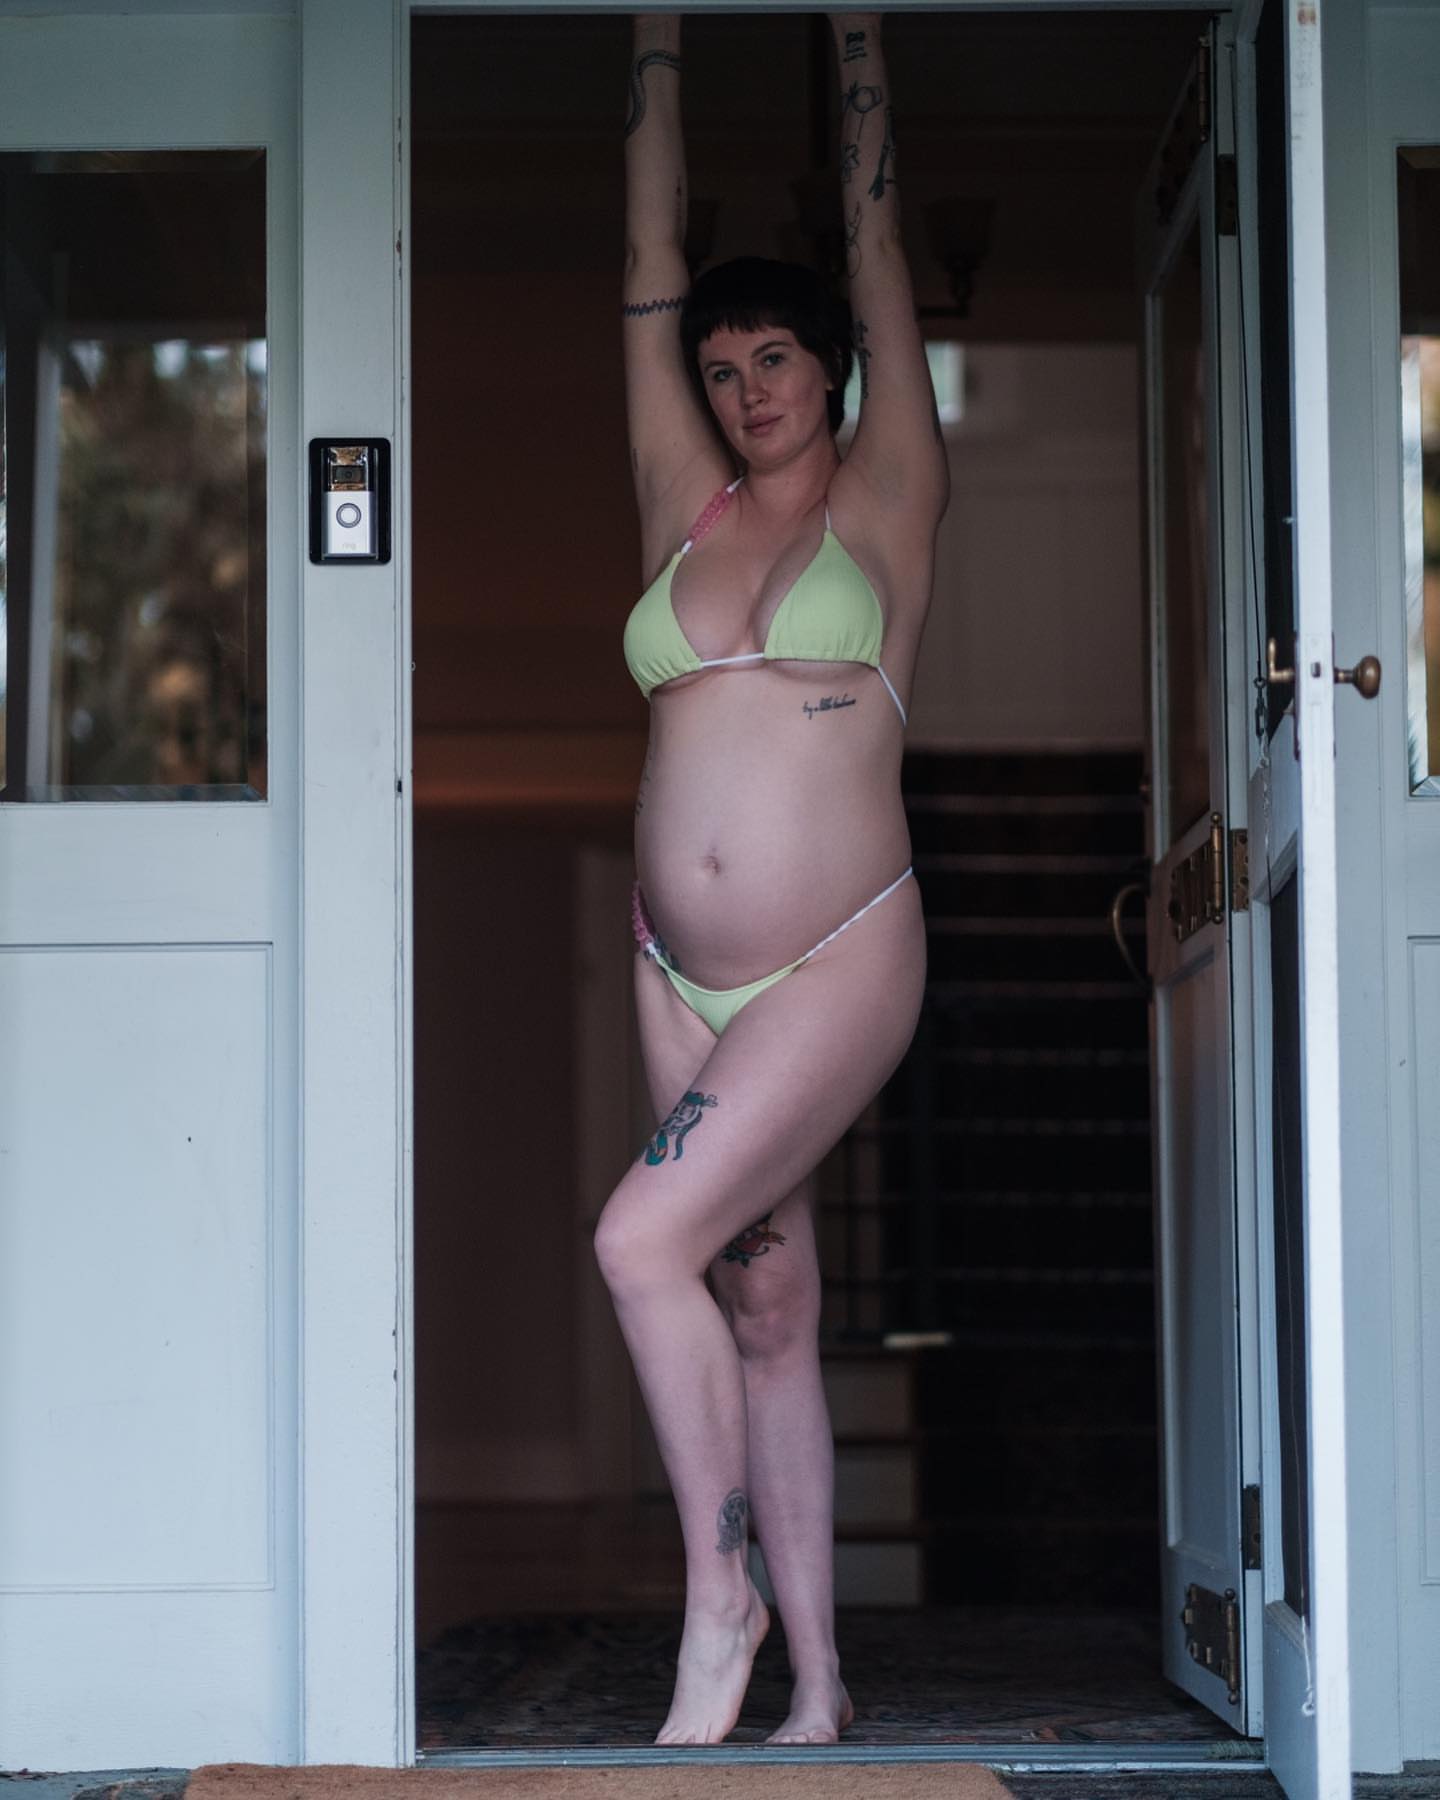 FOTOS El beb de Ireland Baldwin en bikini! - Photo 1